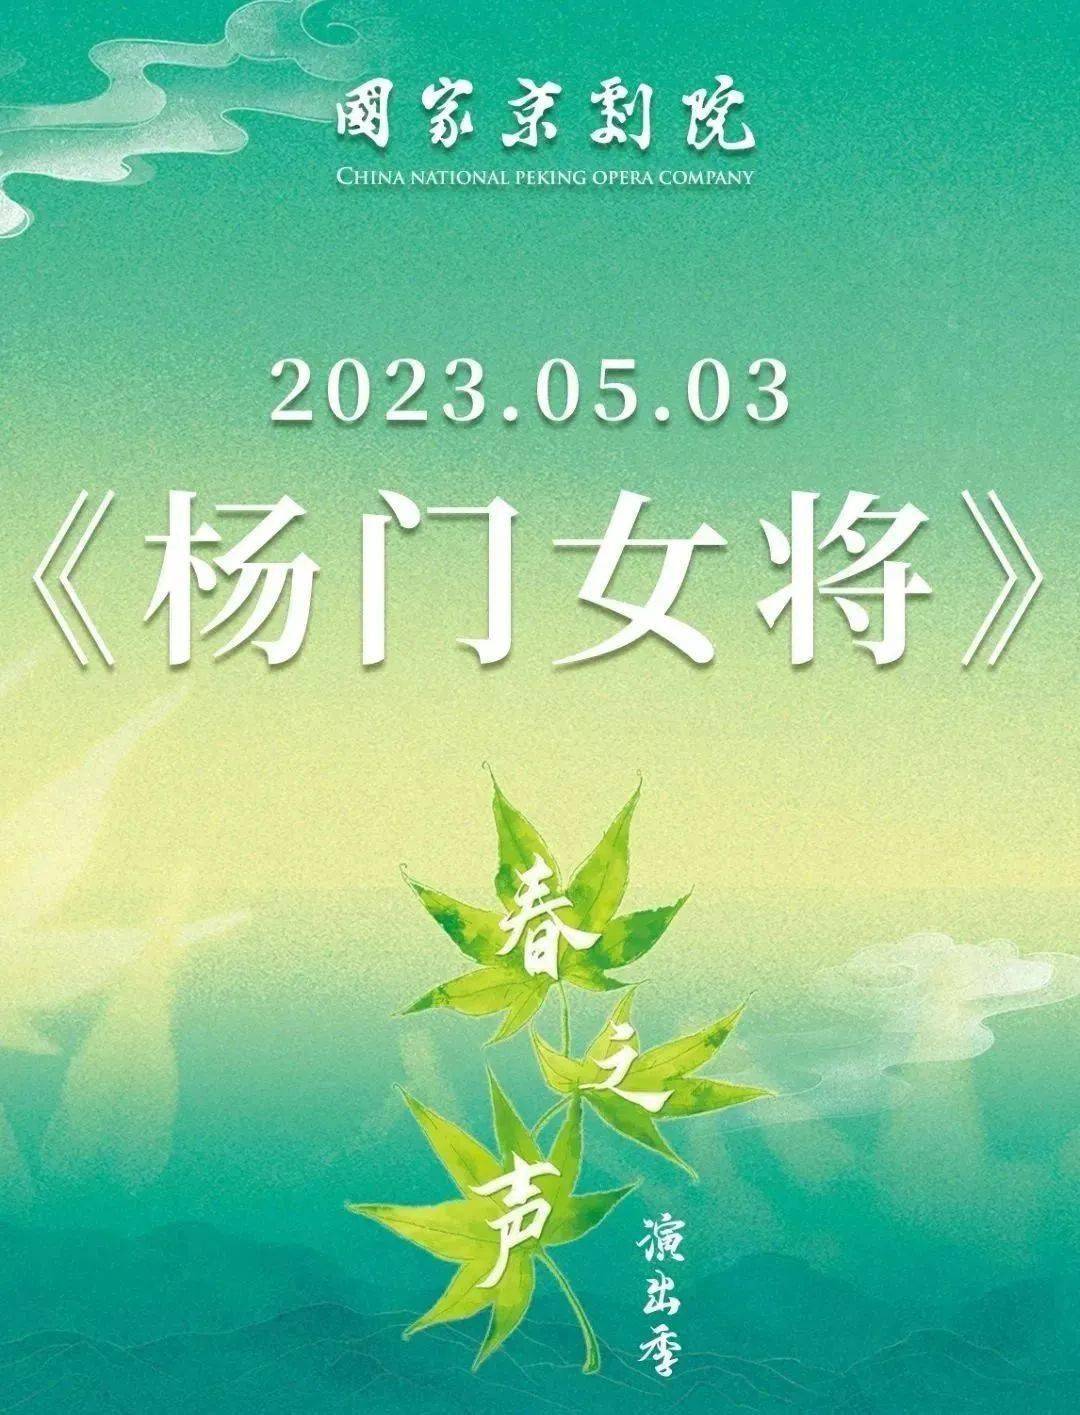 国家京剧院2023年“春之声”演出季现已开票